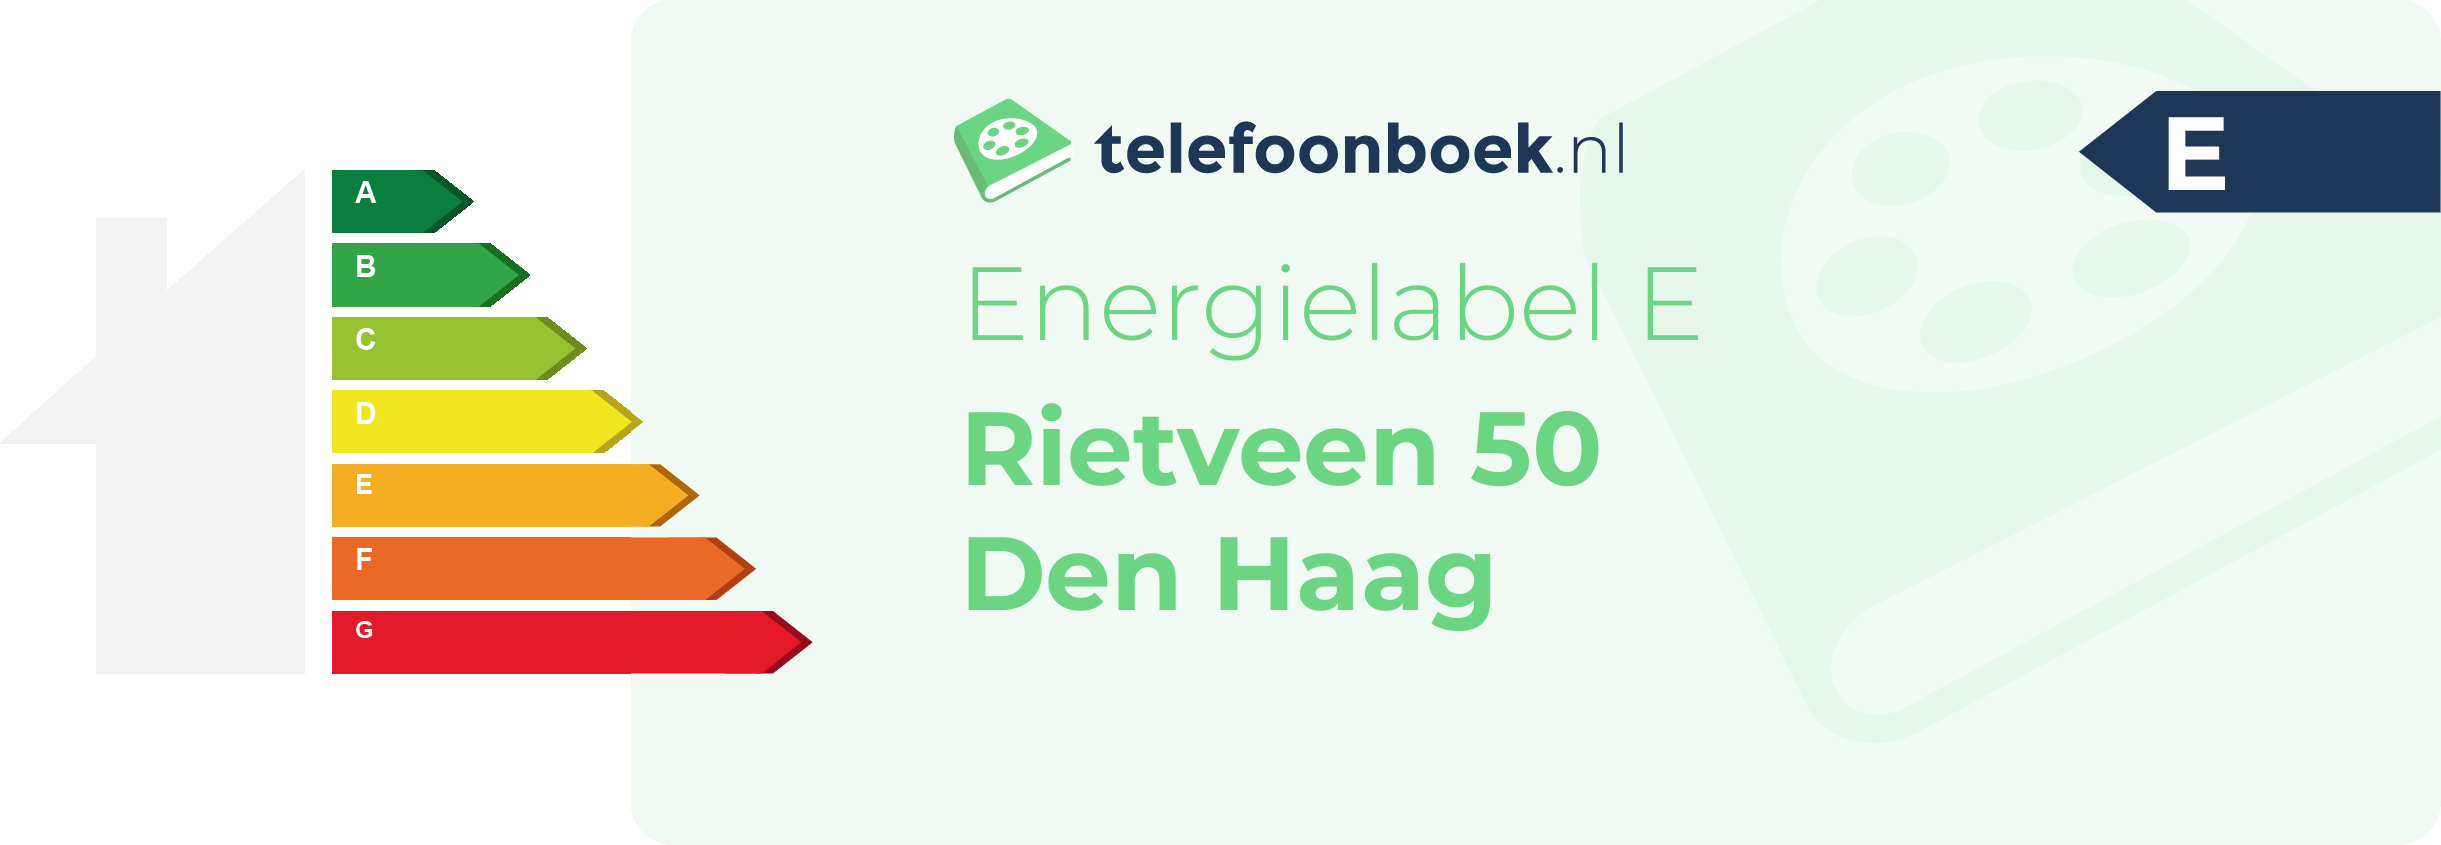 Energielabel Rietveen 50 Den Haag